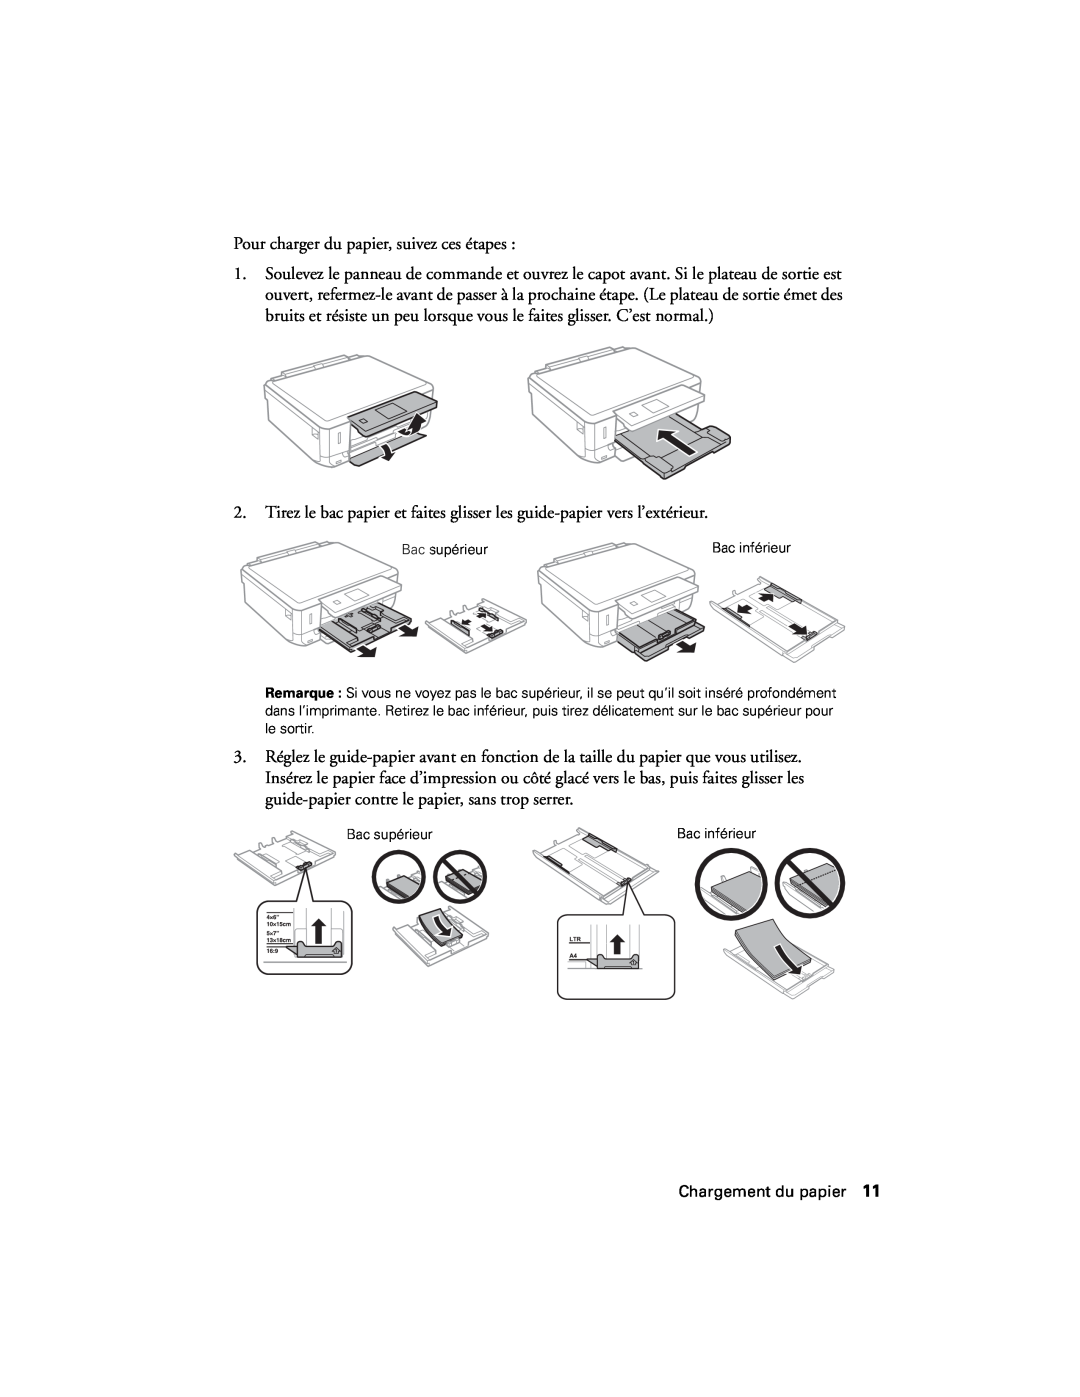 Epson XP-620 manual Pour charger du papier, suivez ces étapes 